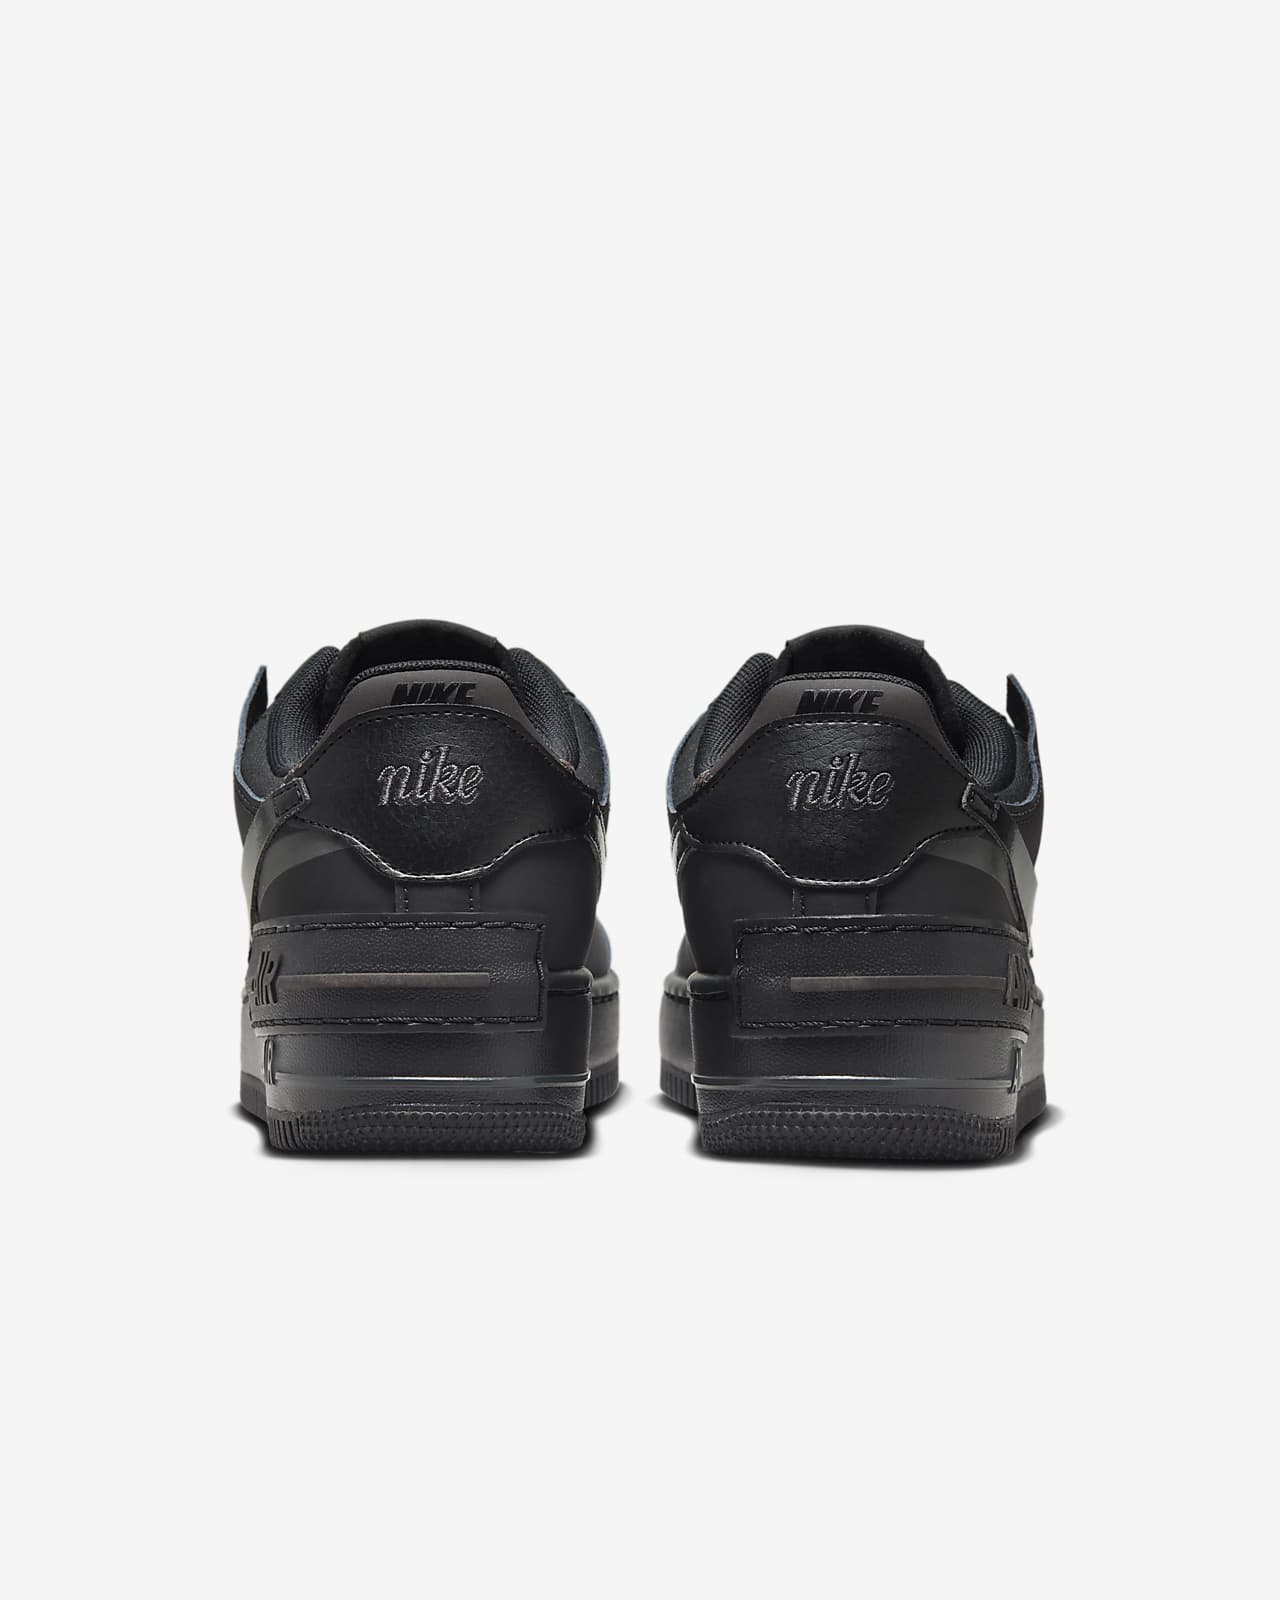 Nike Air Force 1 Shadow in Black